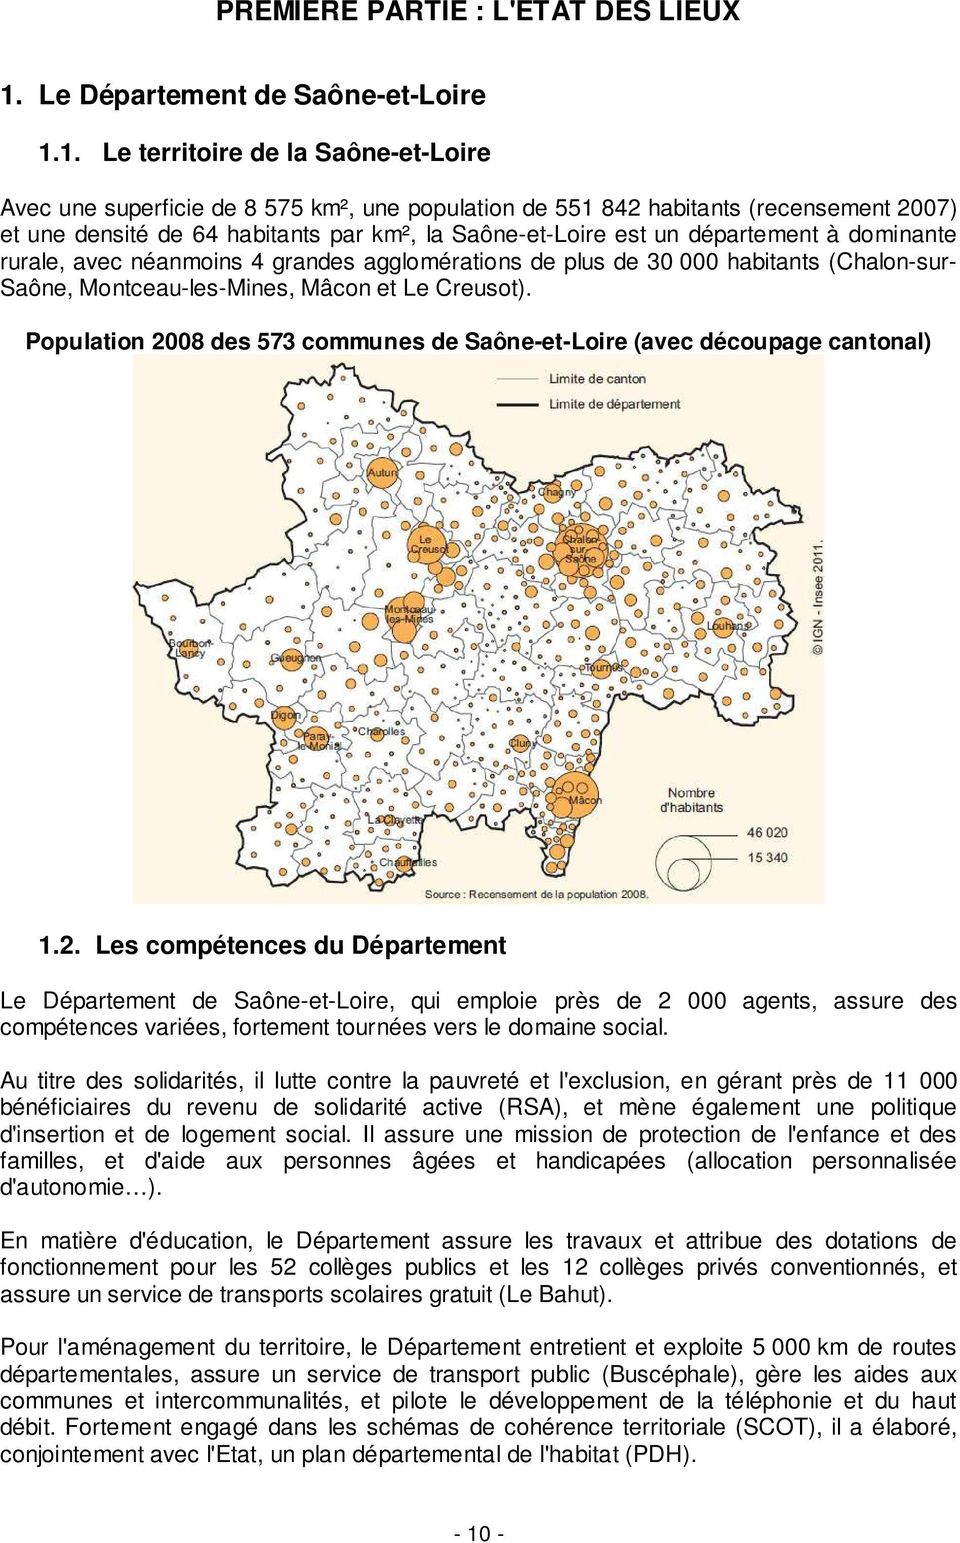 1. Le territoire de la Saône-et-Loire Avec une superficie de 8 575 km², une population de 551 842 habitants (recensement 2007) et une densité de 64 habitants par km², la Saône-et-Loire est un